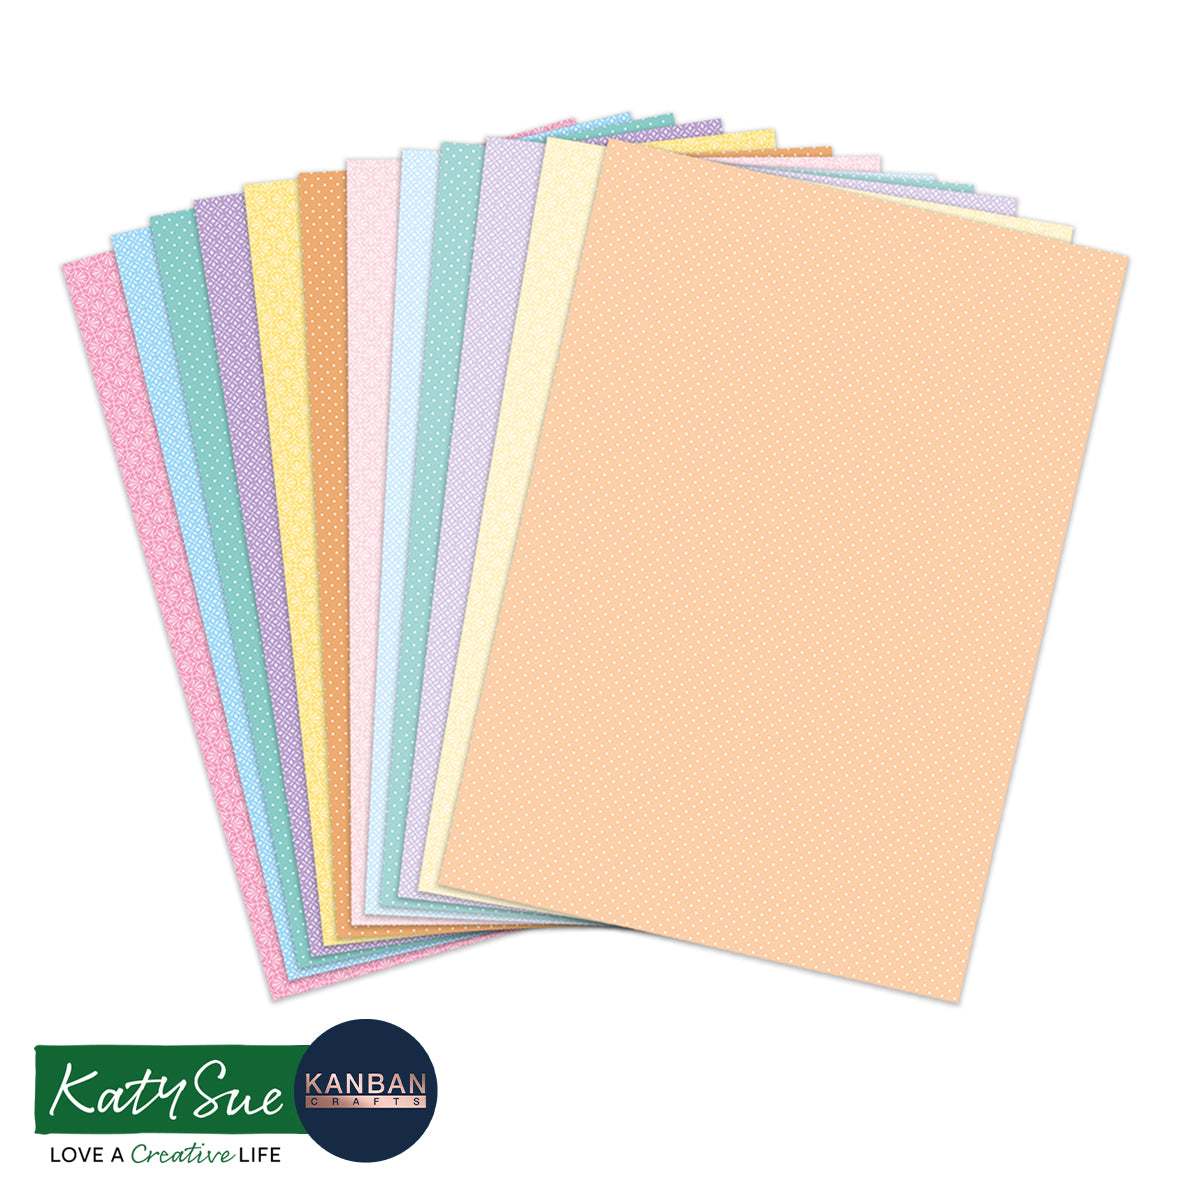 Bedruckter Karton mit hübschen Pastelltönen, 24 Blatt